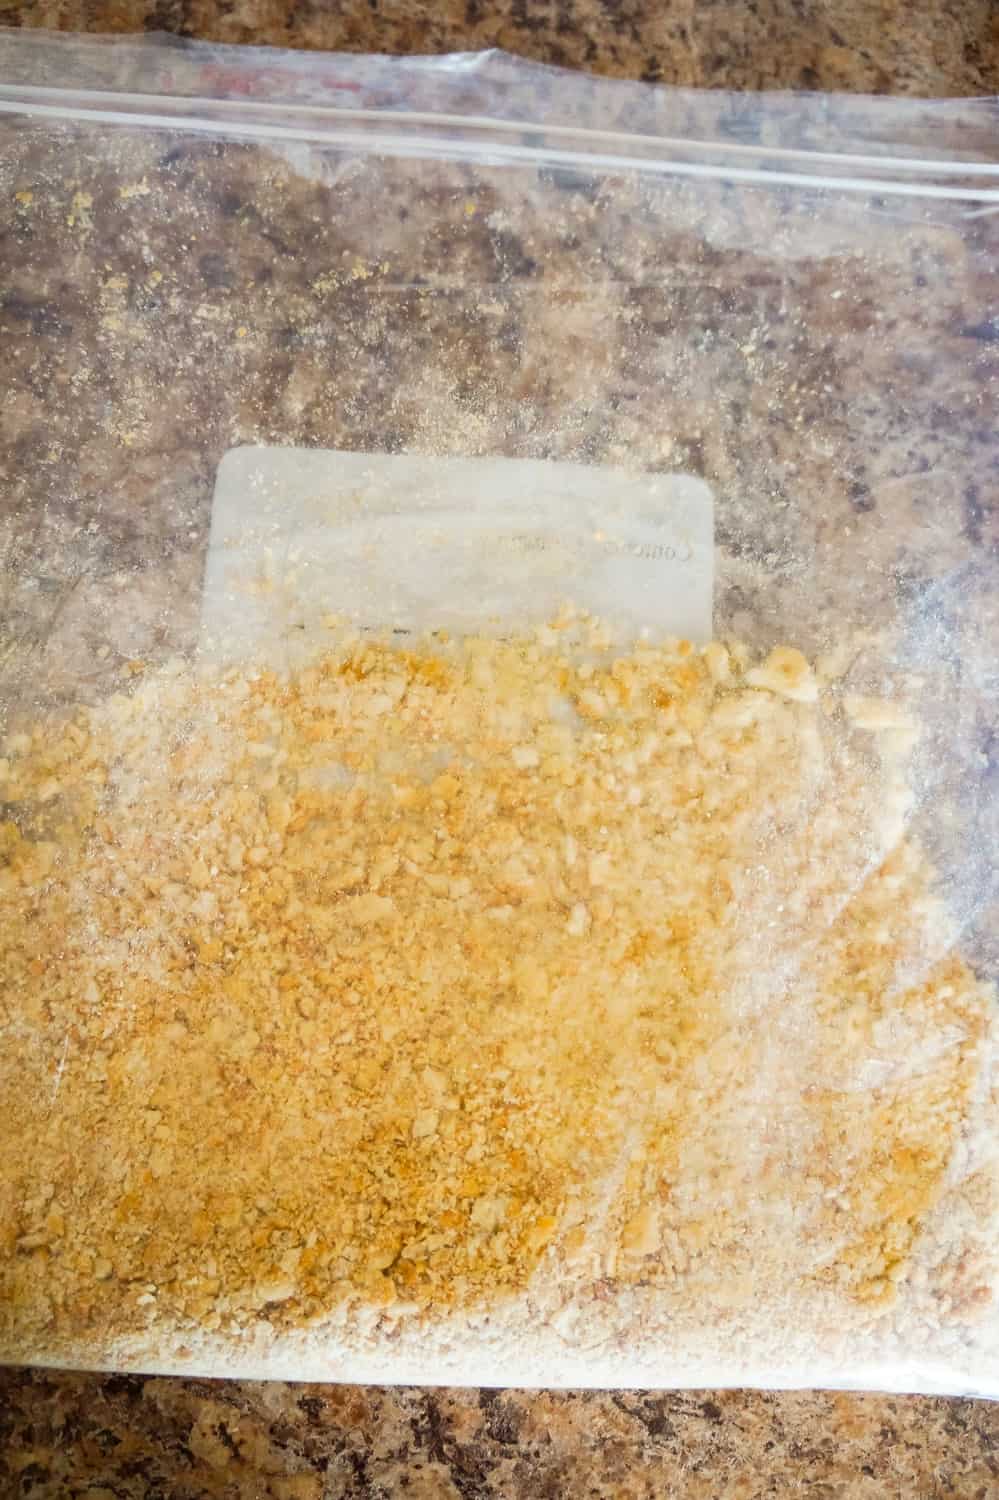 Ritz cracker crumbs in a Ziploc bag